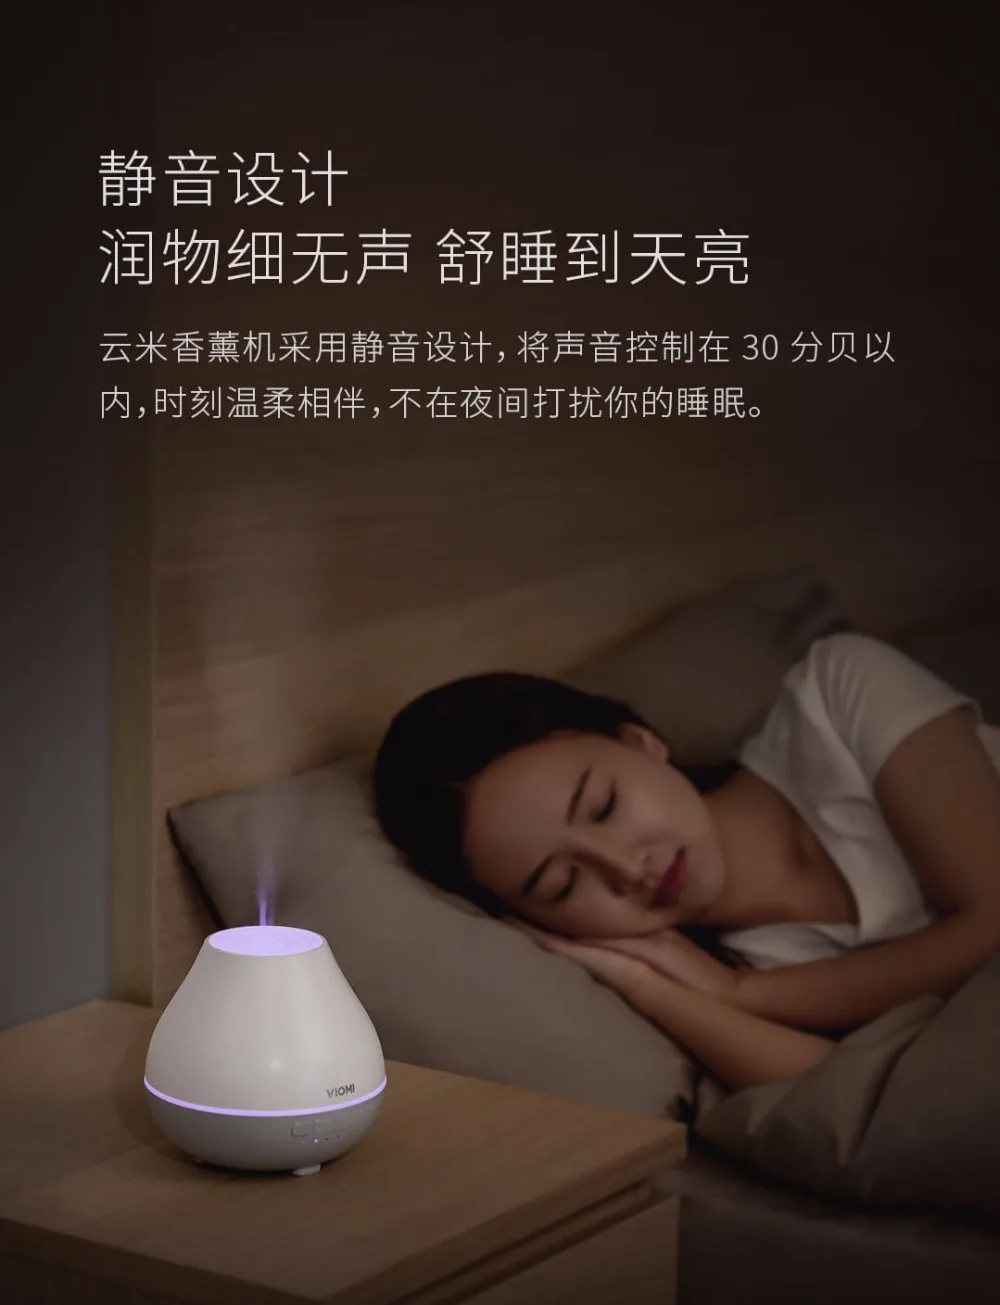 xiaomi youpin Viomi ароматерапия машина умное приложение дистанционное управление музыкальные колонки увлажнитель воздуха Bluetooth светодиодный светильник Новинка